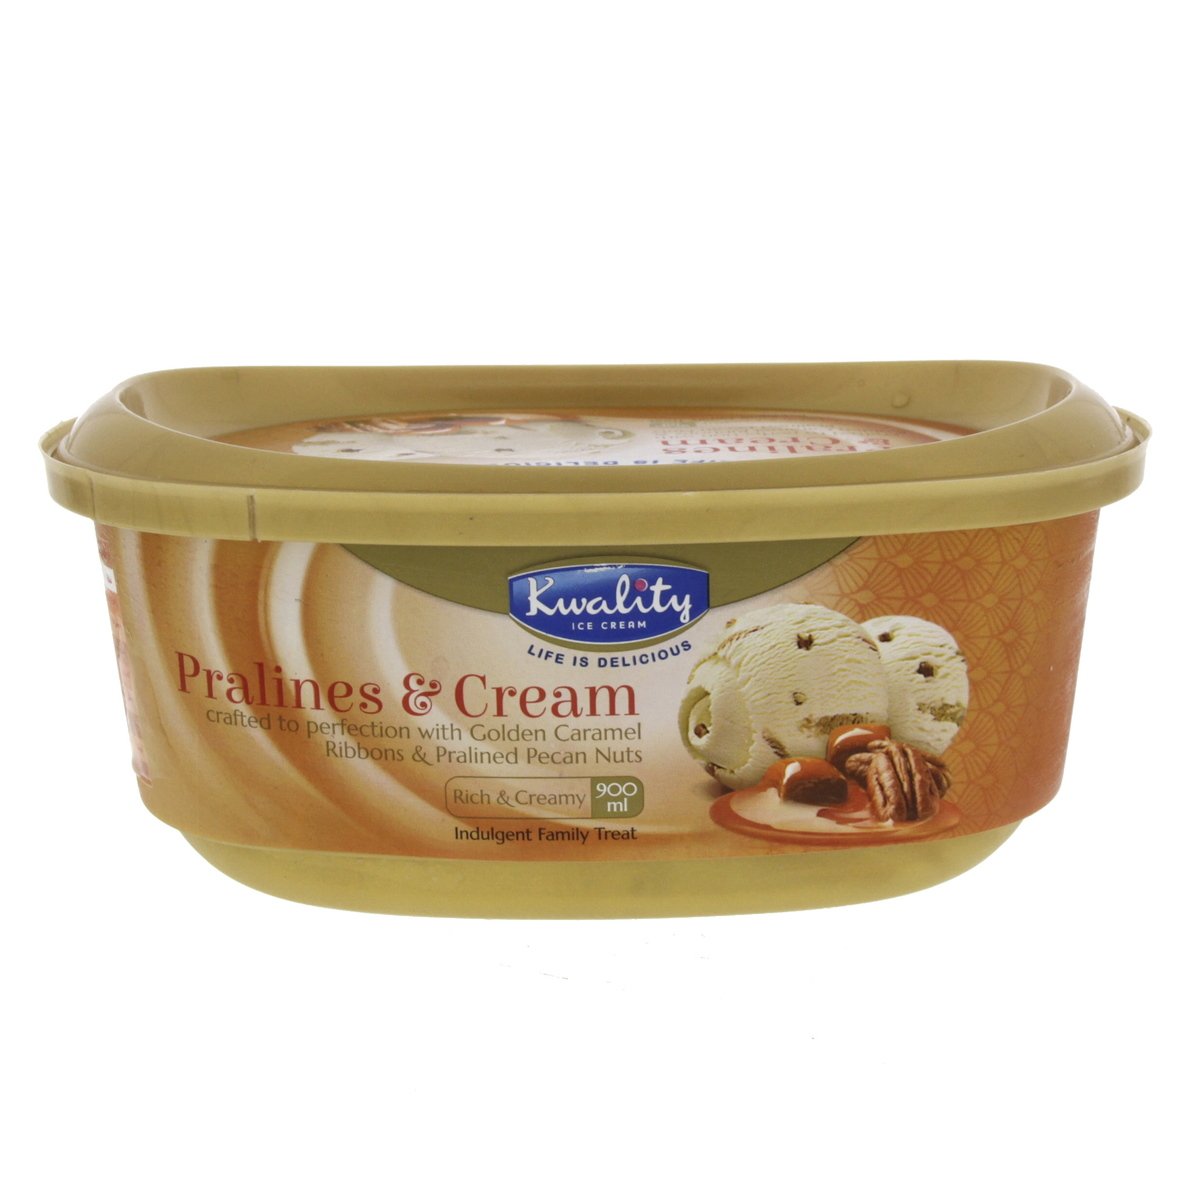 Kwality Pralines & Cream Ice Cream 900 ml